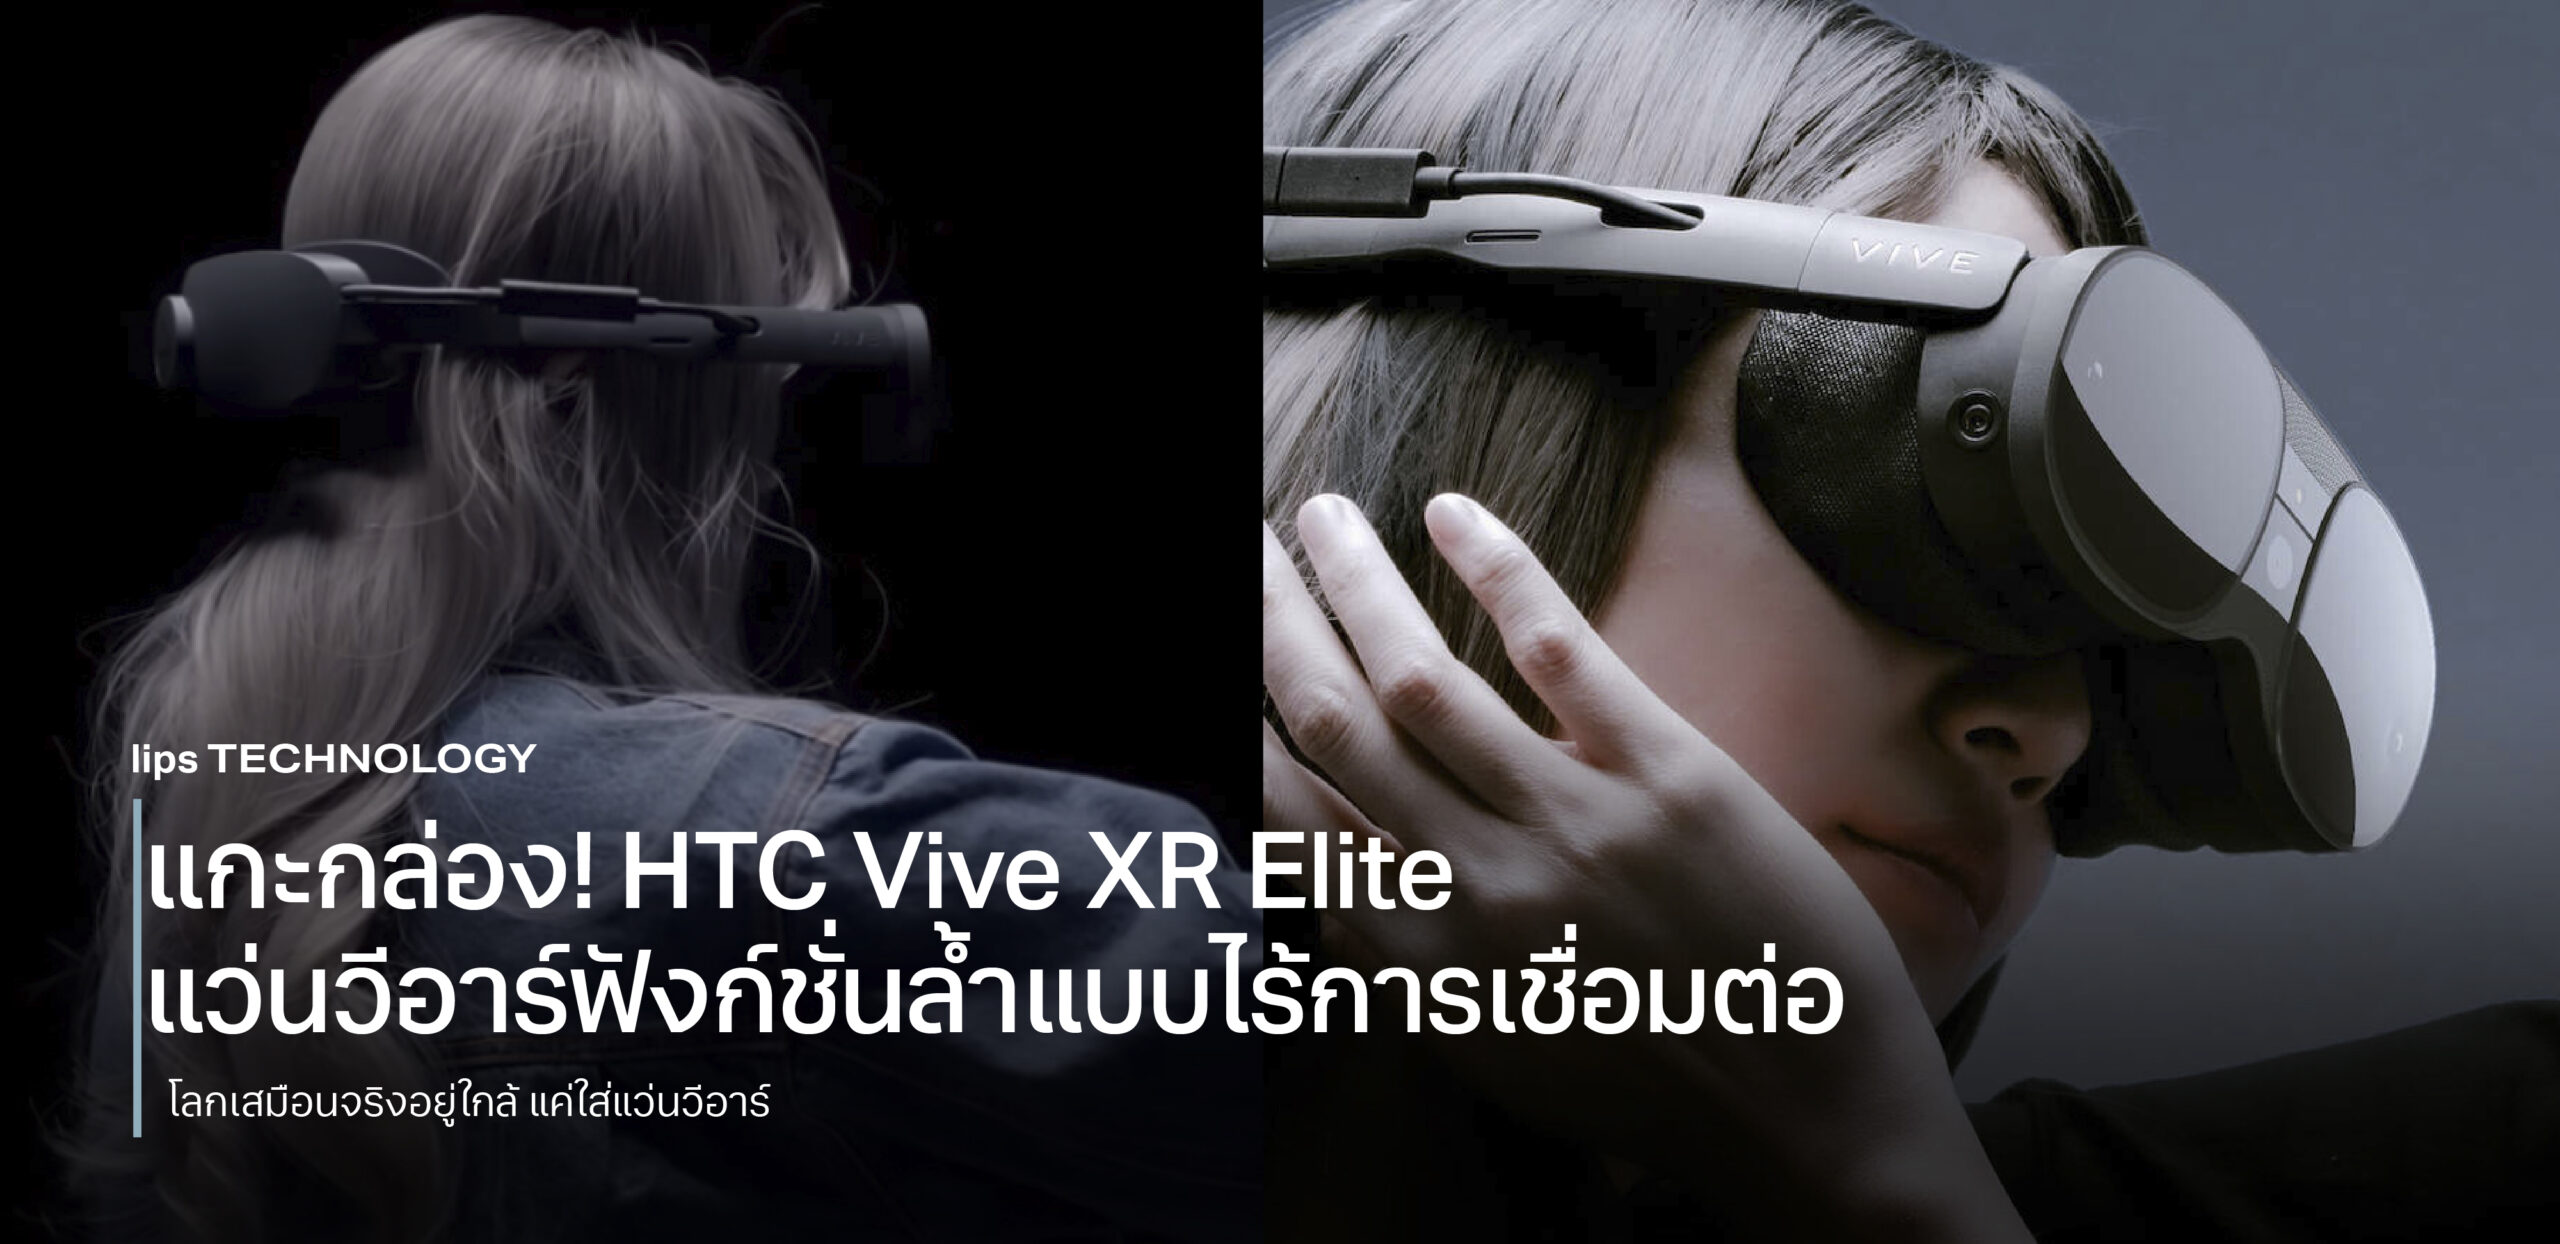 แกะกล่อง! HTC Vive XR Elite แว่นวีอาร์ฟังก์ชั่นล้ำแบบไร้การเชื่อมต่อ